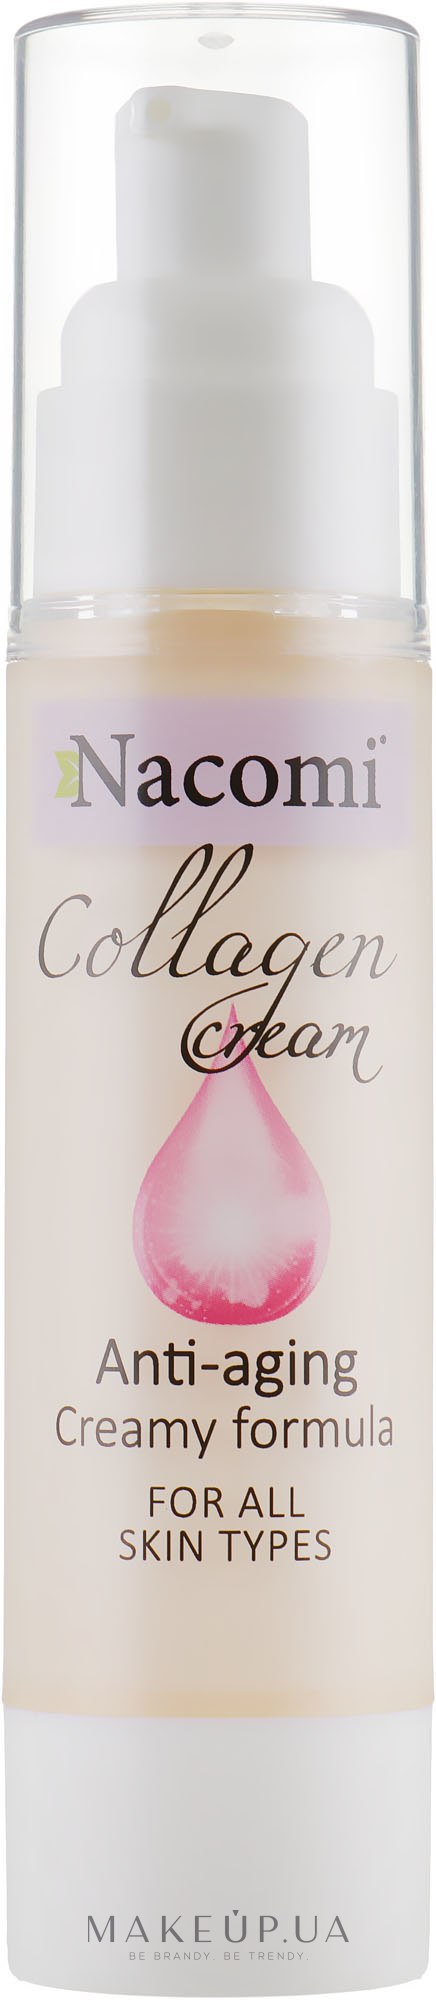 Крем-гель для лица c коллагеном - Nacomi Collagen Cream Anti-aging — фото 50ml